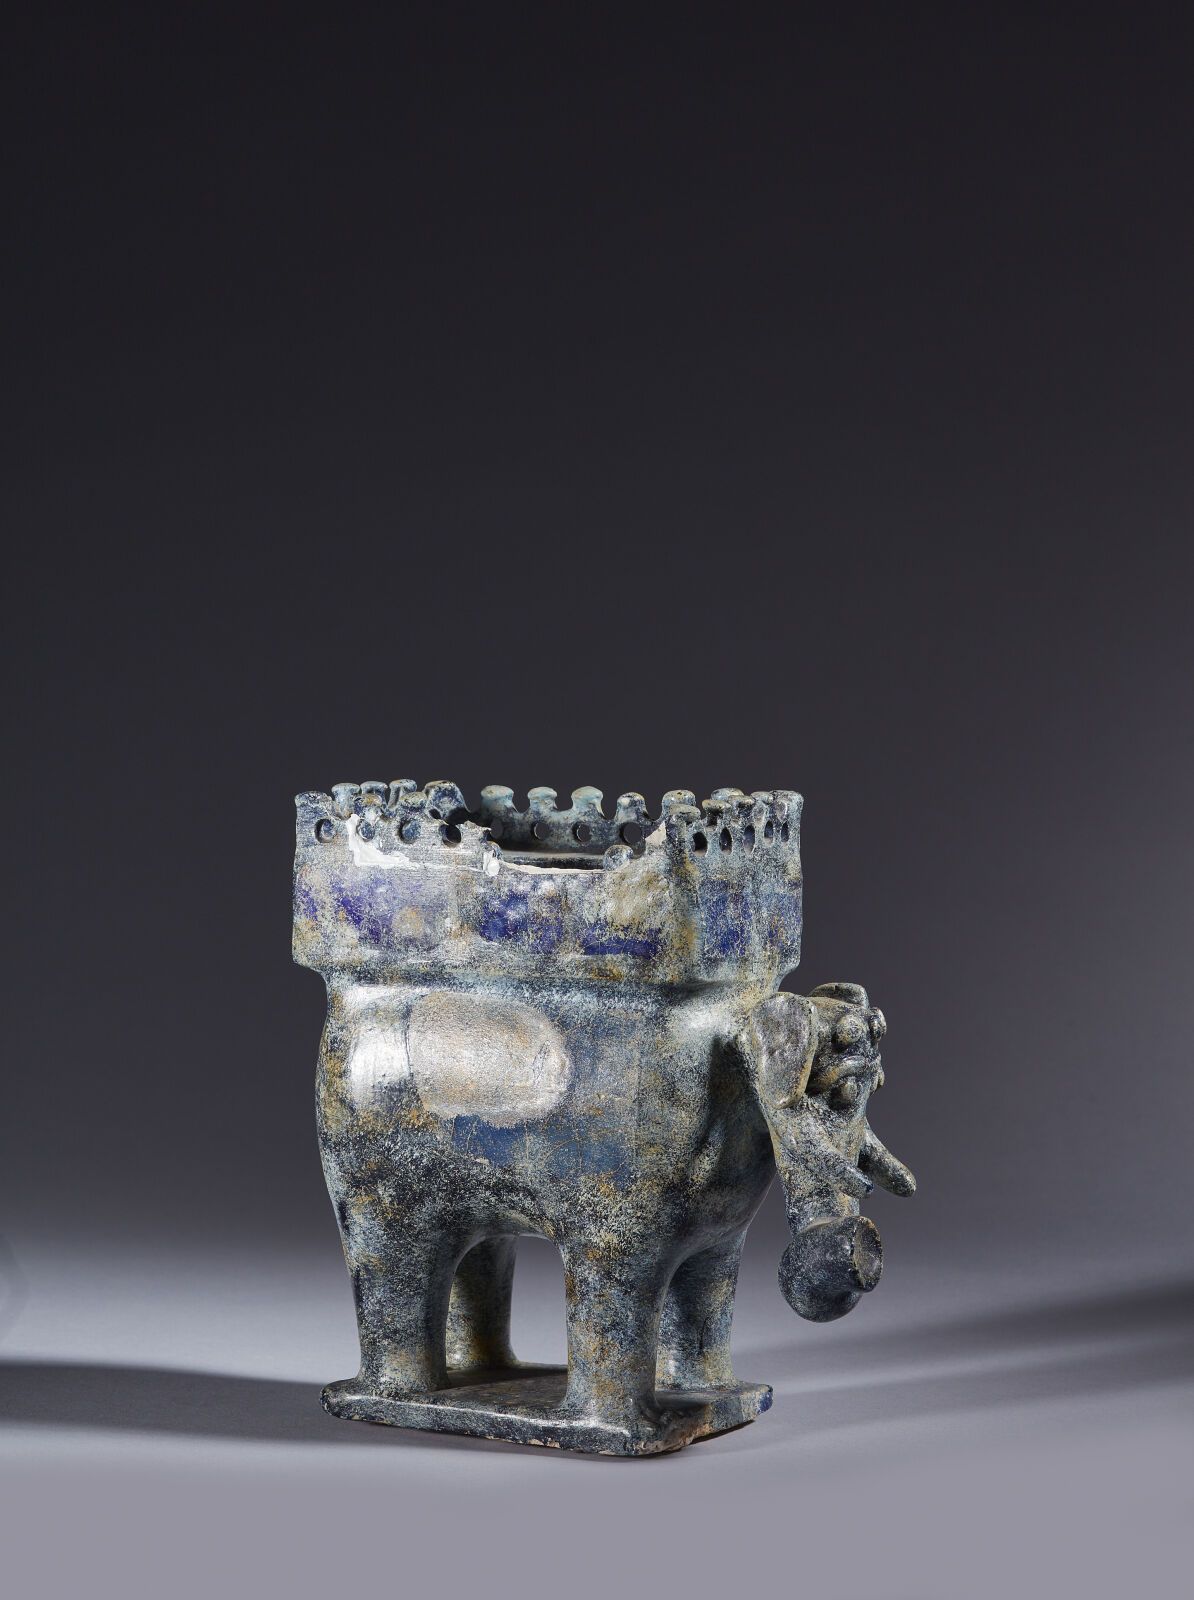 Null 伊朗，12-13 世纪
圆形硅质陶瓷人像，钴蓝色单色釉下有模制装饰，描绘的是一头站立在细长方形底座上的大象。大象背上背着一顶轿子的下半部分，轿子边缘装&hellip;